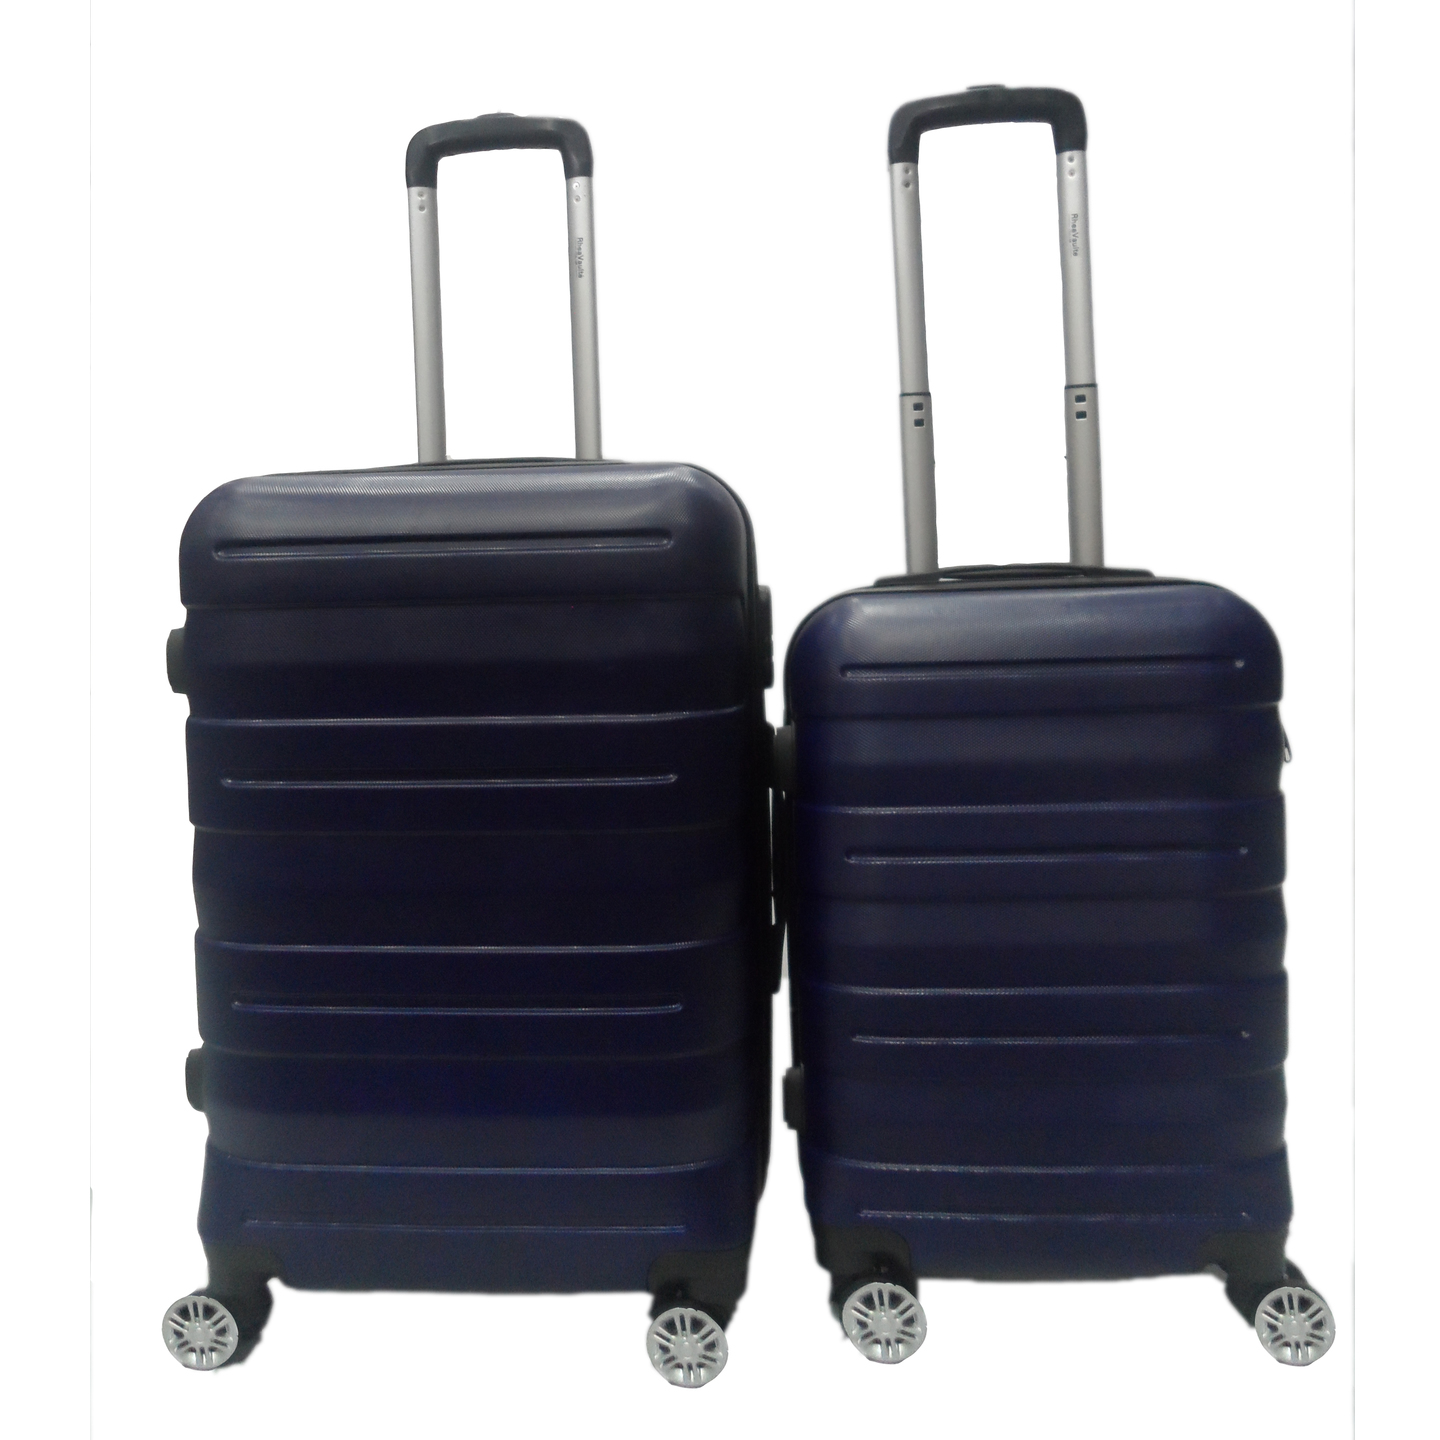 RV-131 Elegant Hard Box Luggage - Blue 20 inch and 24 inch